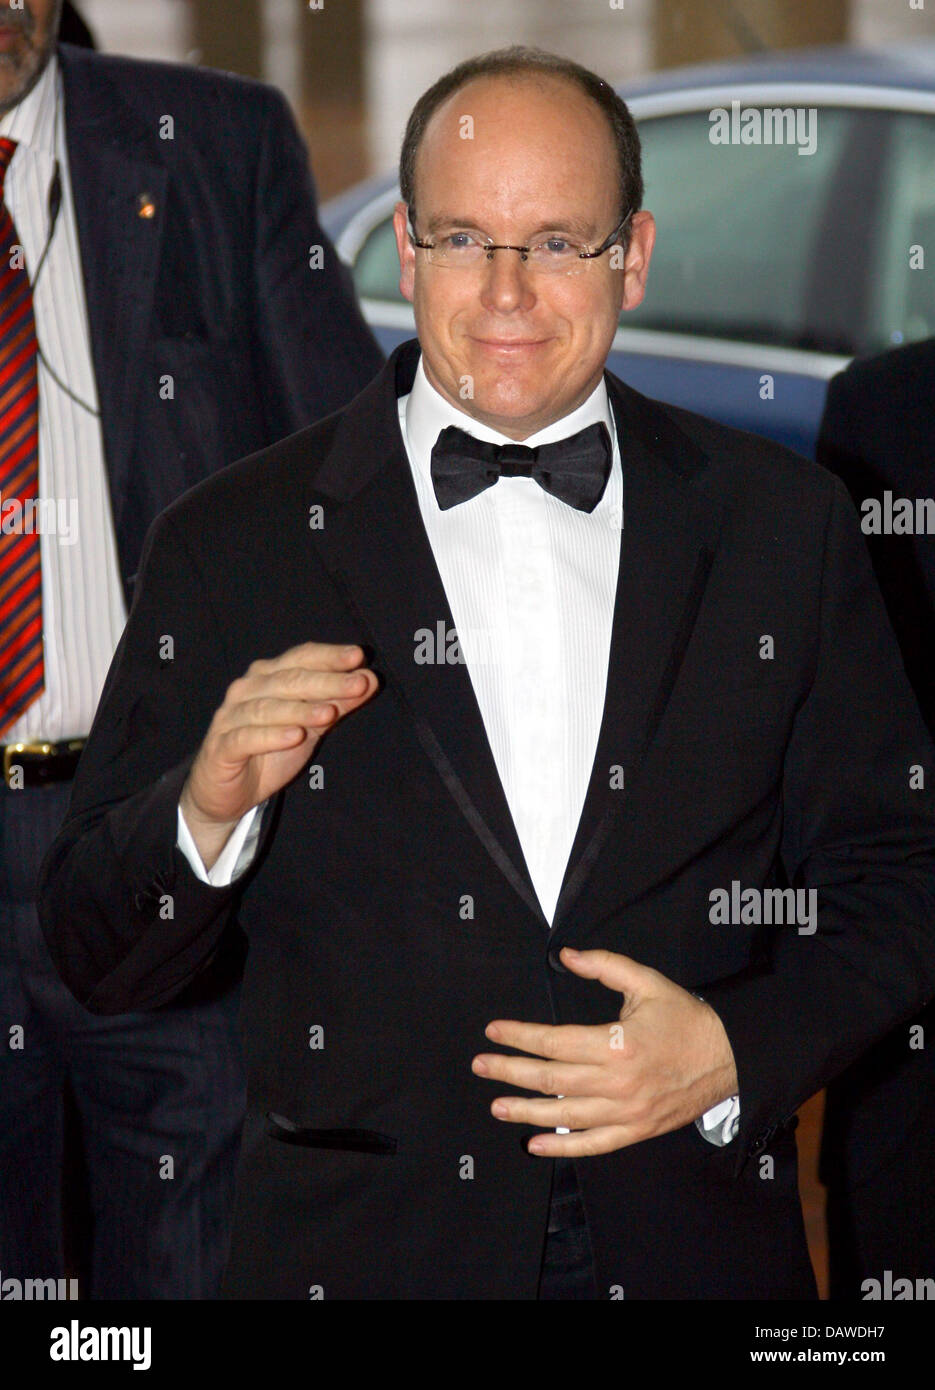 Le Prince Albert II de Monaco arrive pour les Laureus World Sports Award 2007 à Barcelone, Espagne, lundi, 02 avril 2007. Les Laureus Award honore les athlètes en cours de le monde et est décerné par un jury composé d'anciens athlètes de haut niveau. Photo : Carsten Rehder Banque D'Images